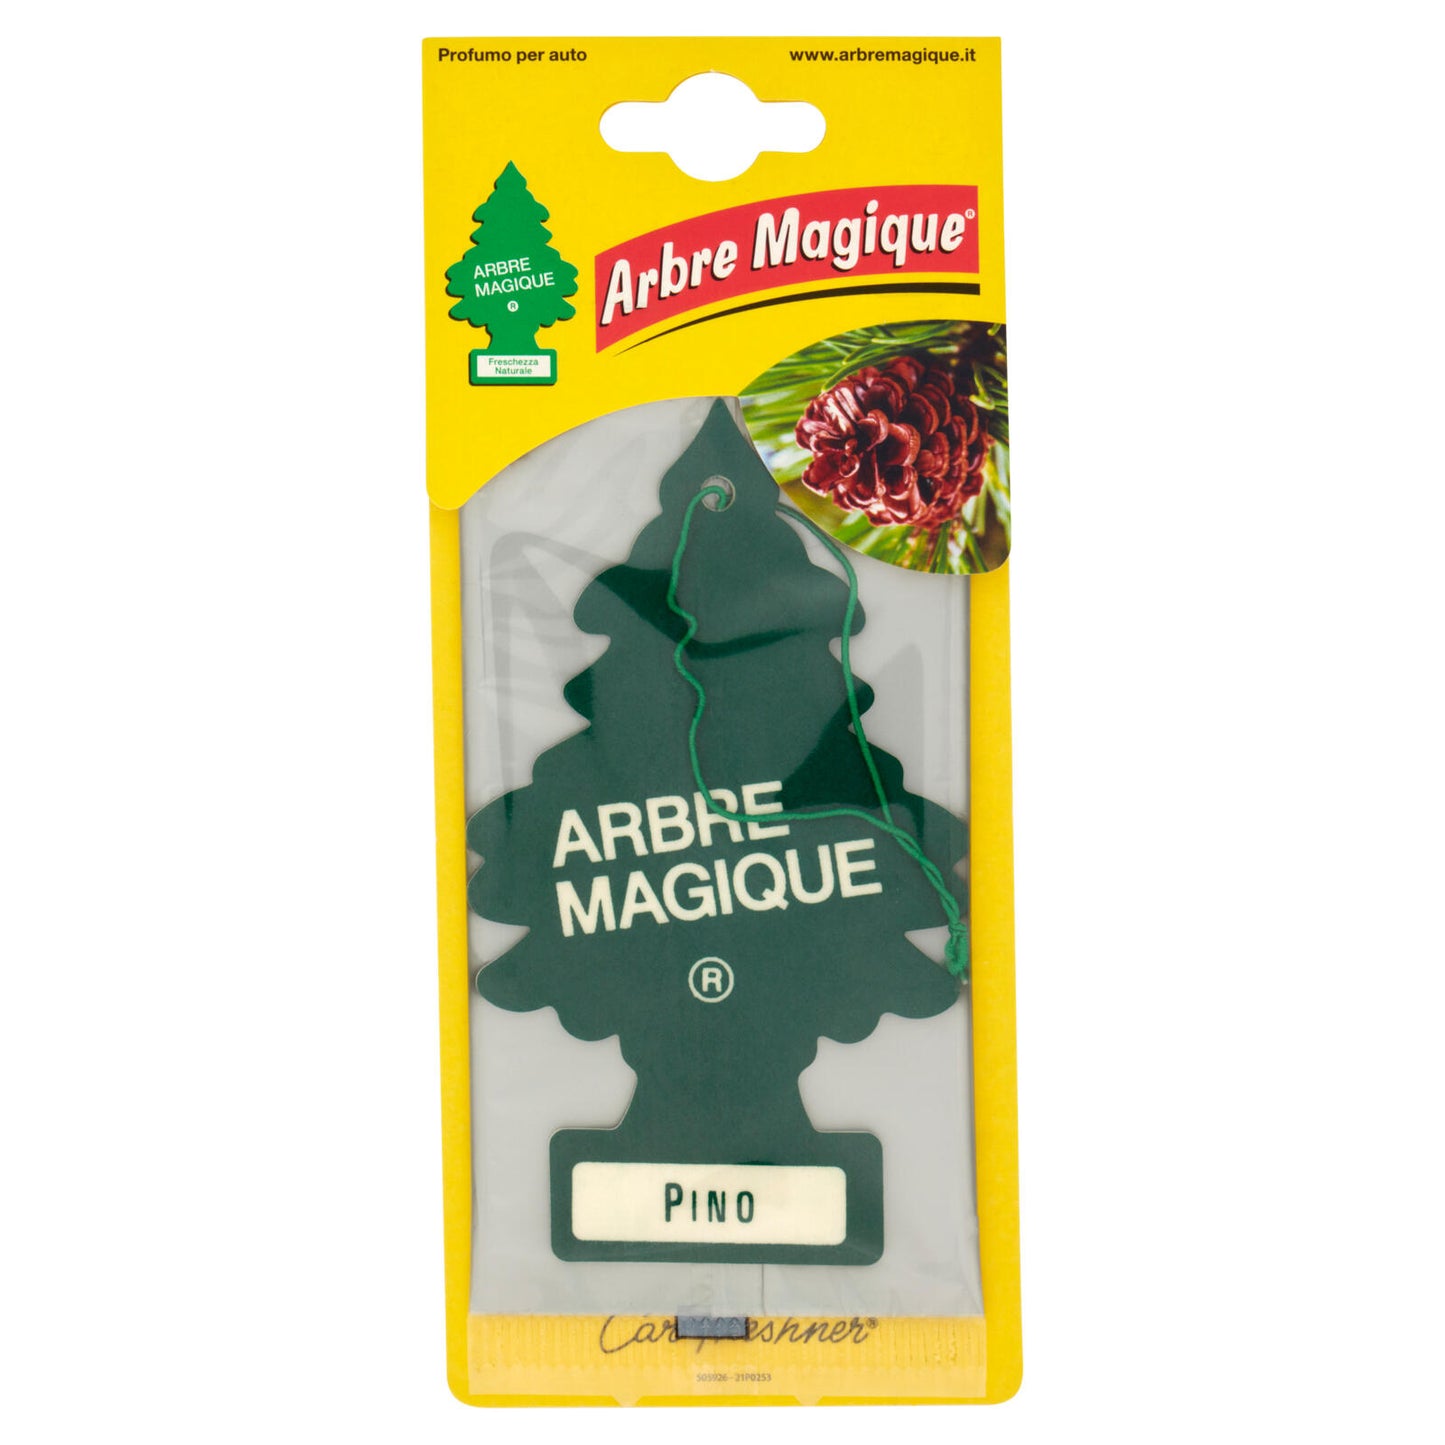 Arbre Magique Pino 5 g